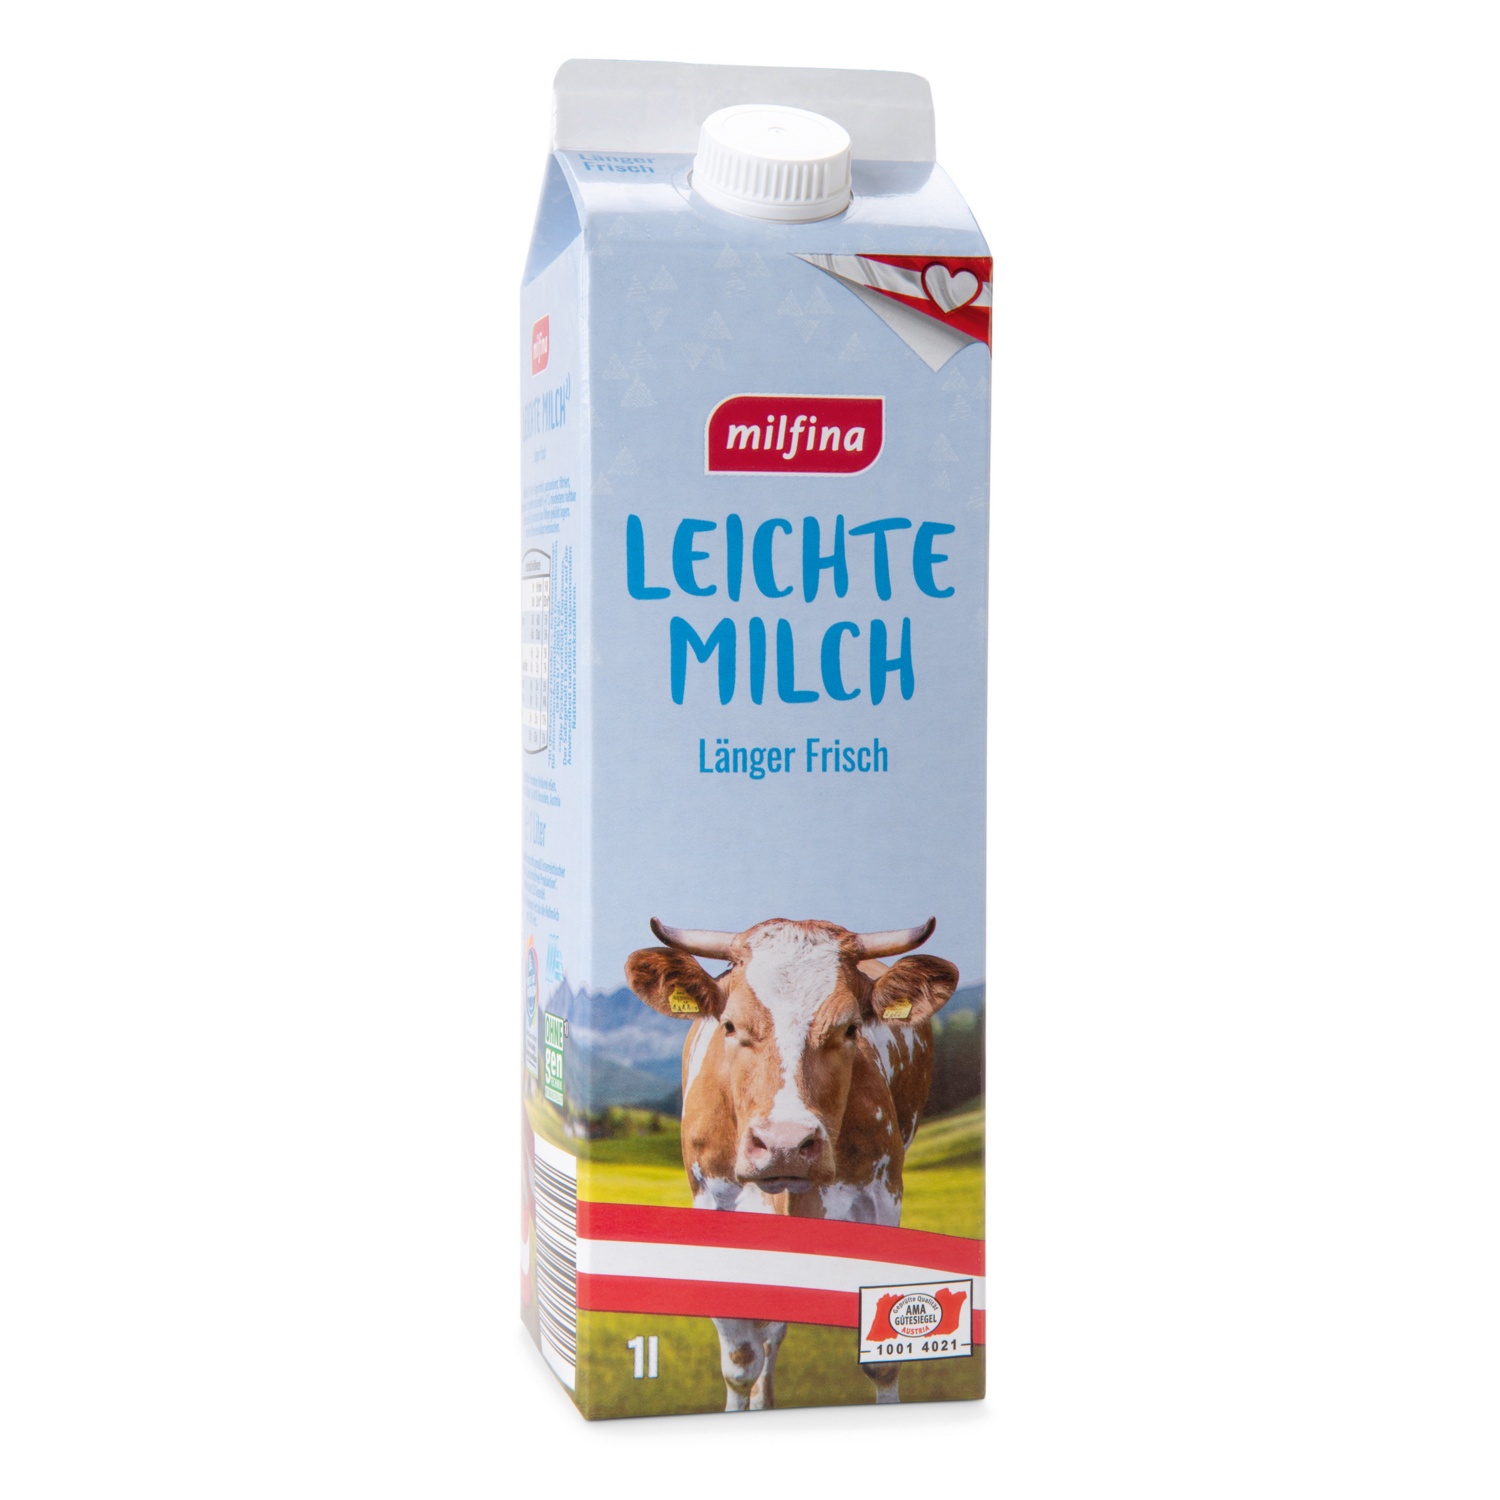 MILFINA länger frisch Milch